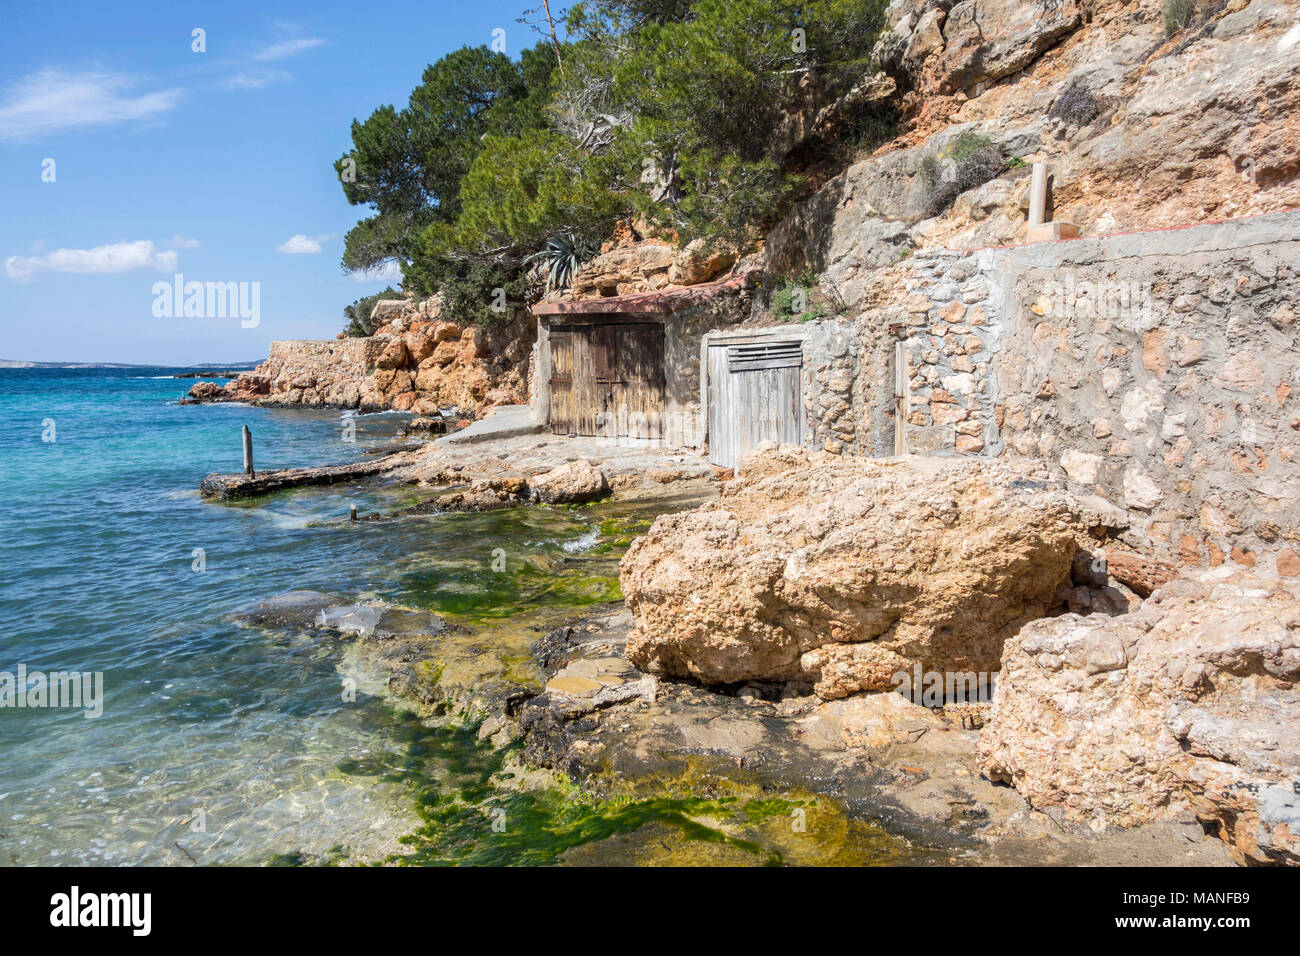 Astillero cabañas, interés cultural cercano al mar, de la ciudad de Sant Antoni, la isla de Ibiza, España. Foto de stock